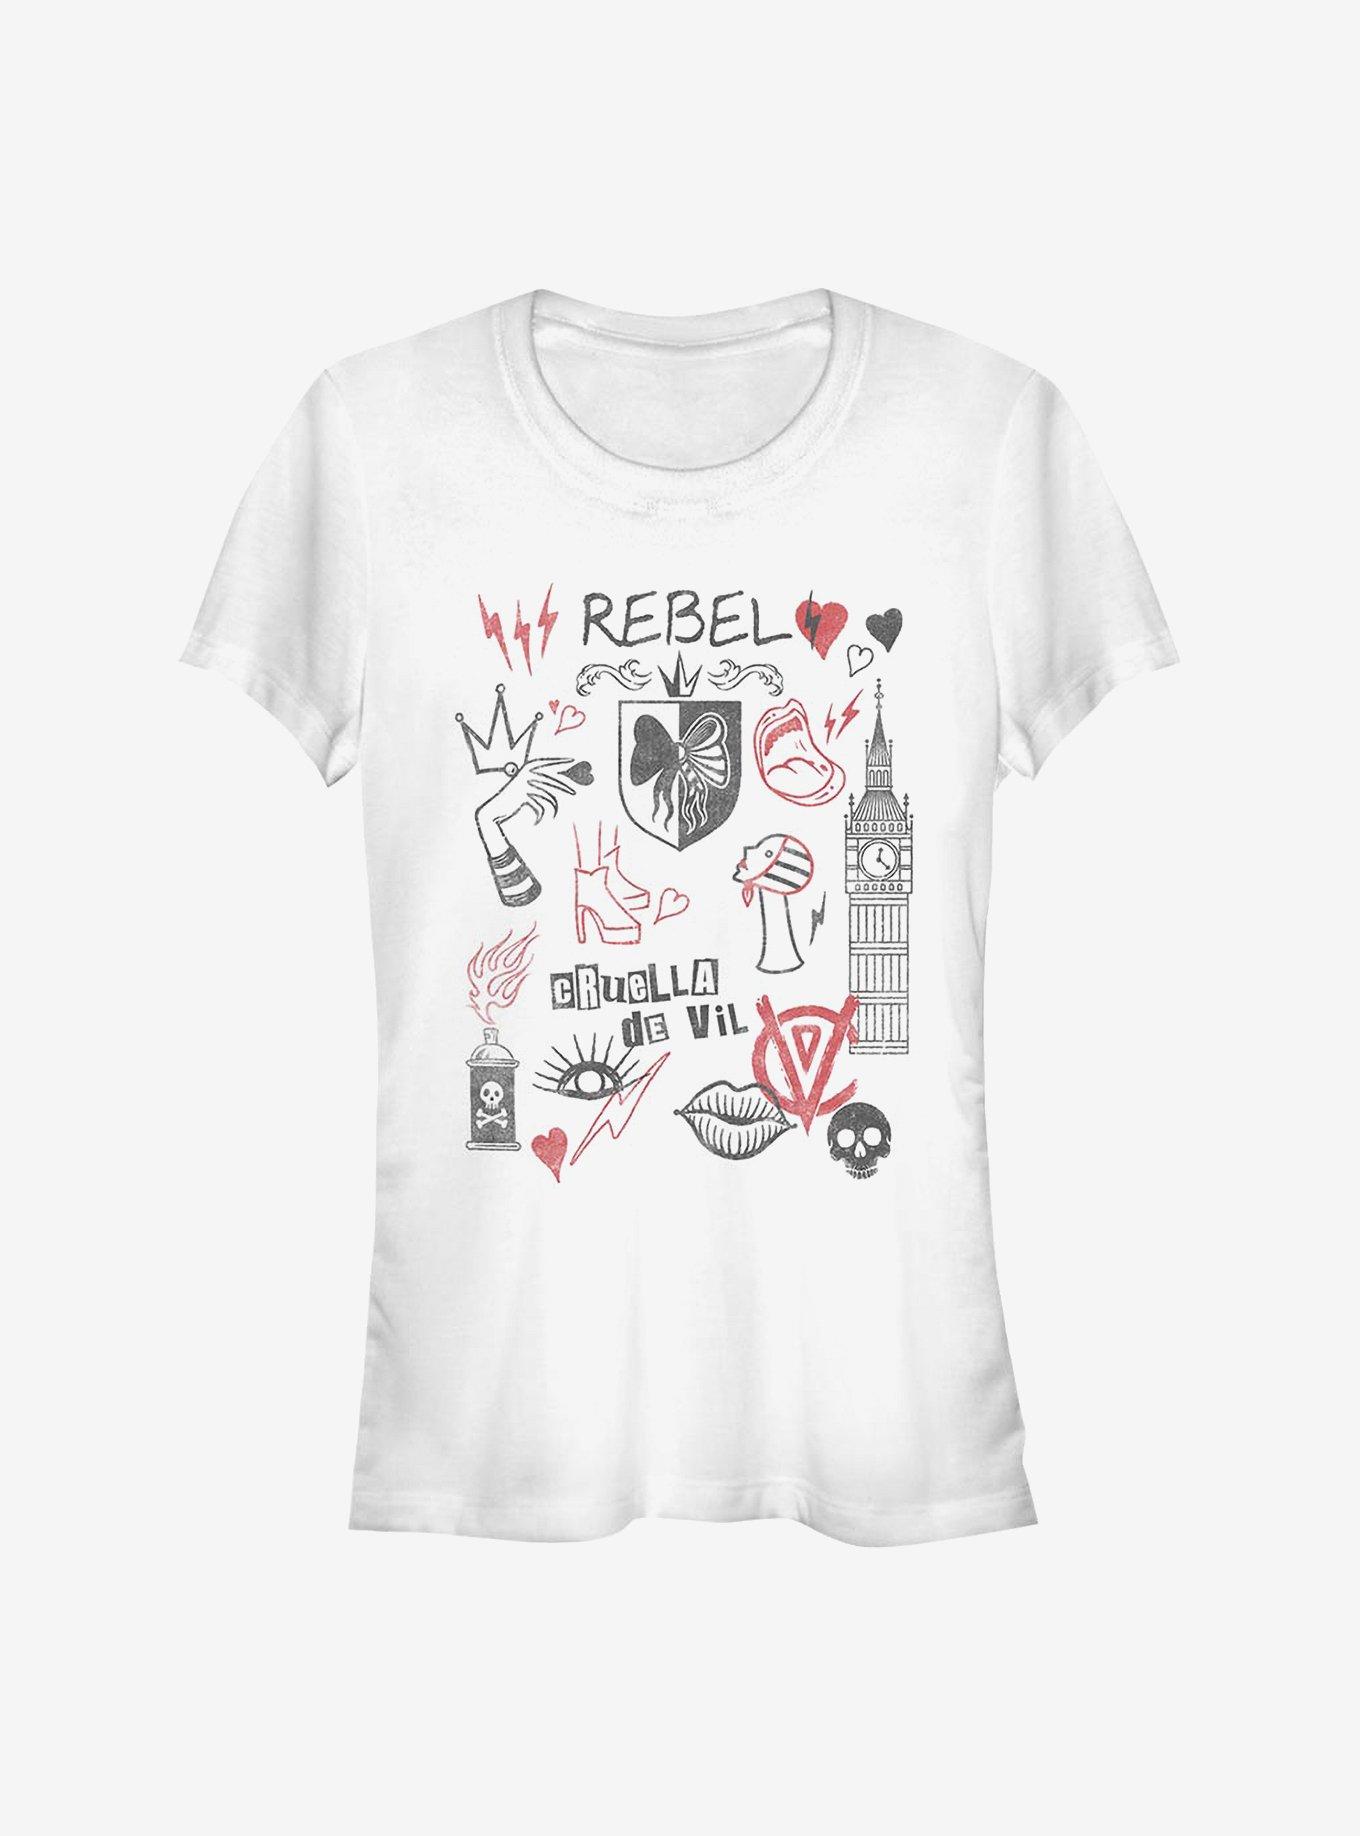 Disney Cruella Rebel Queen Doodles Girls T-Shirt, WHITE, hi-res